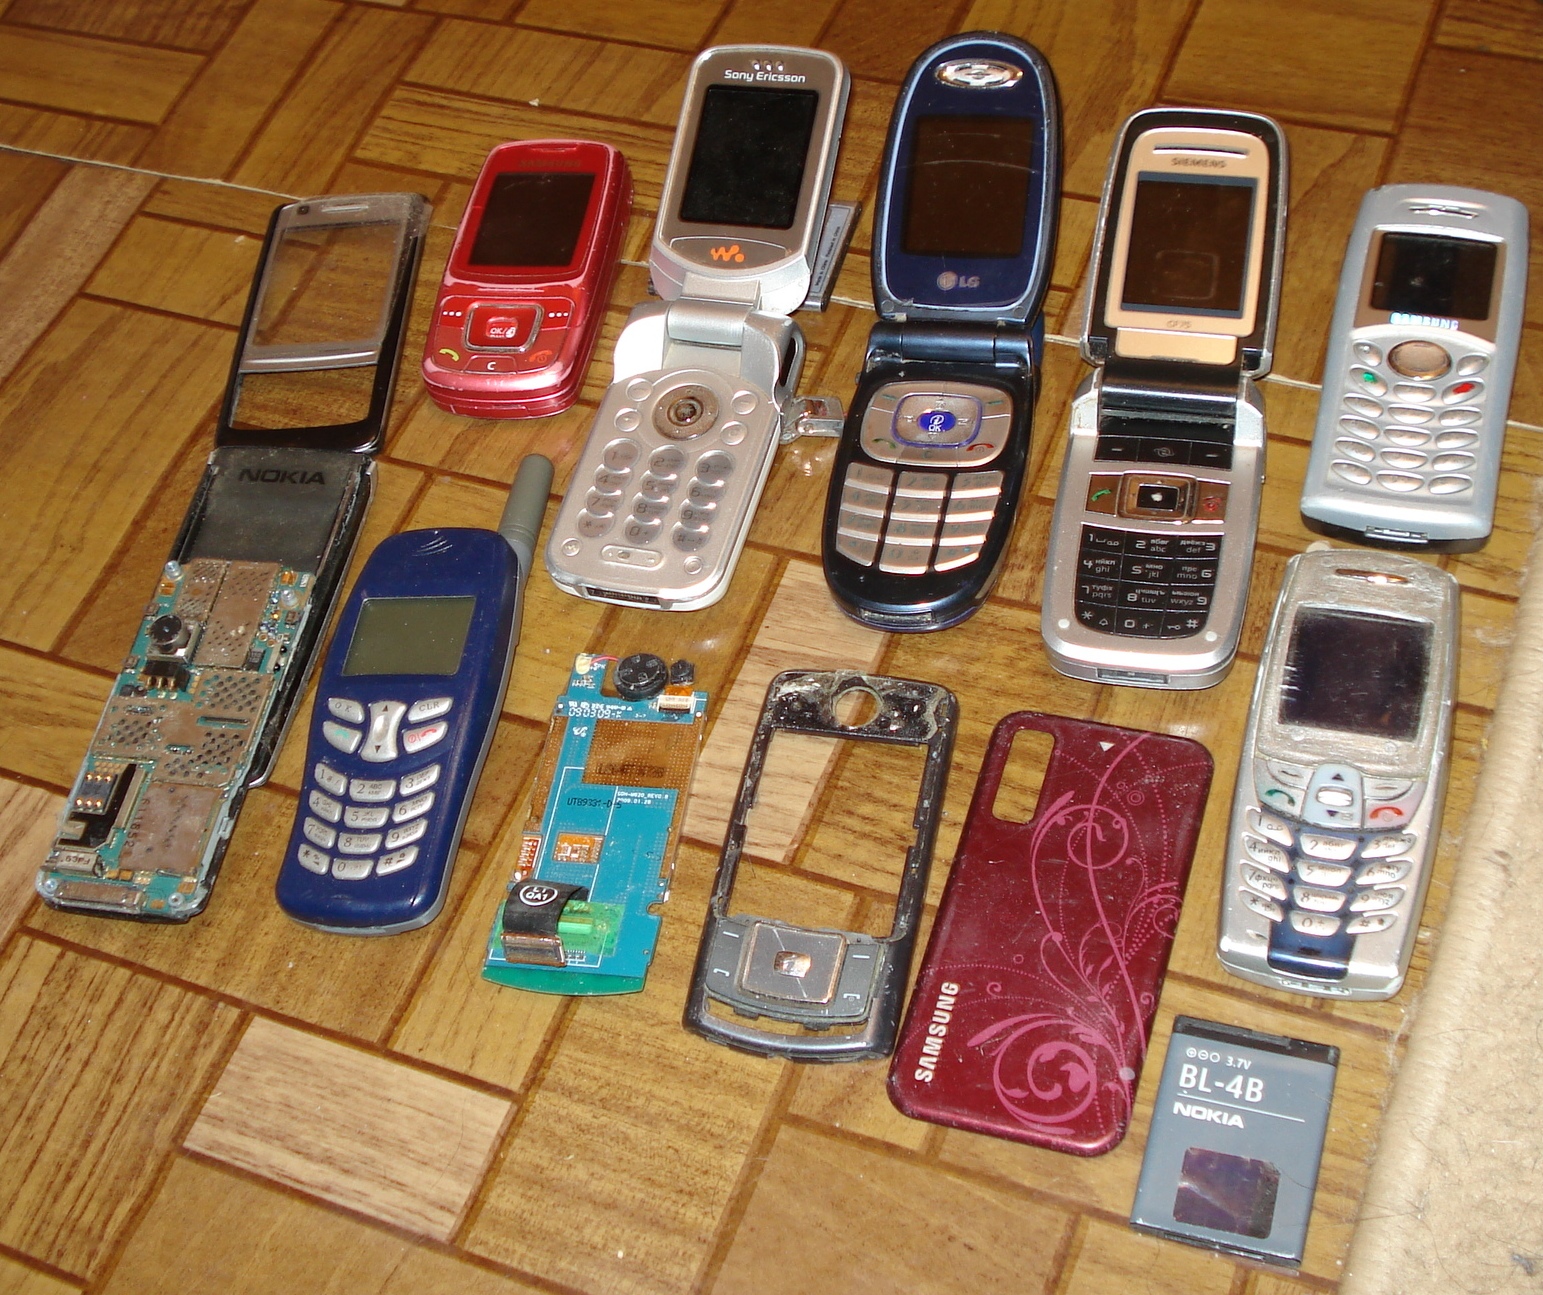 Купить разбитый телефон. Сломанный телефон. Сломанный смартфон. Коллекция старых сломанных телефонов. Покупка разбитых телефонов.